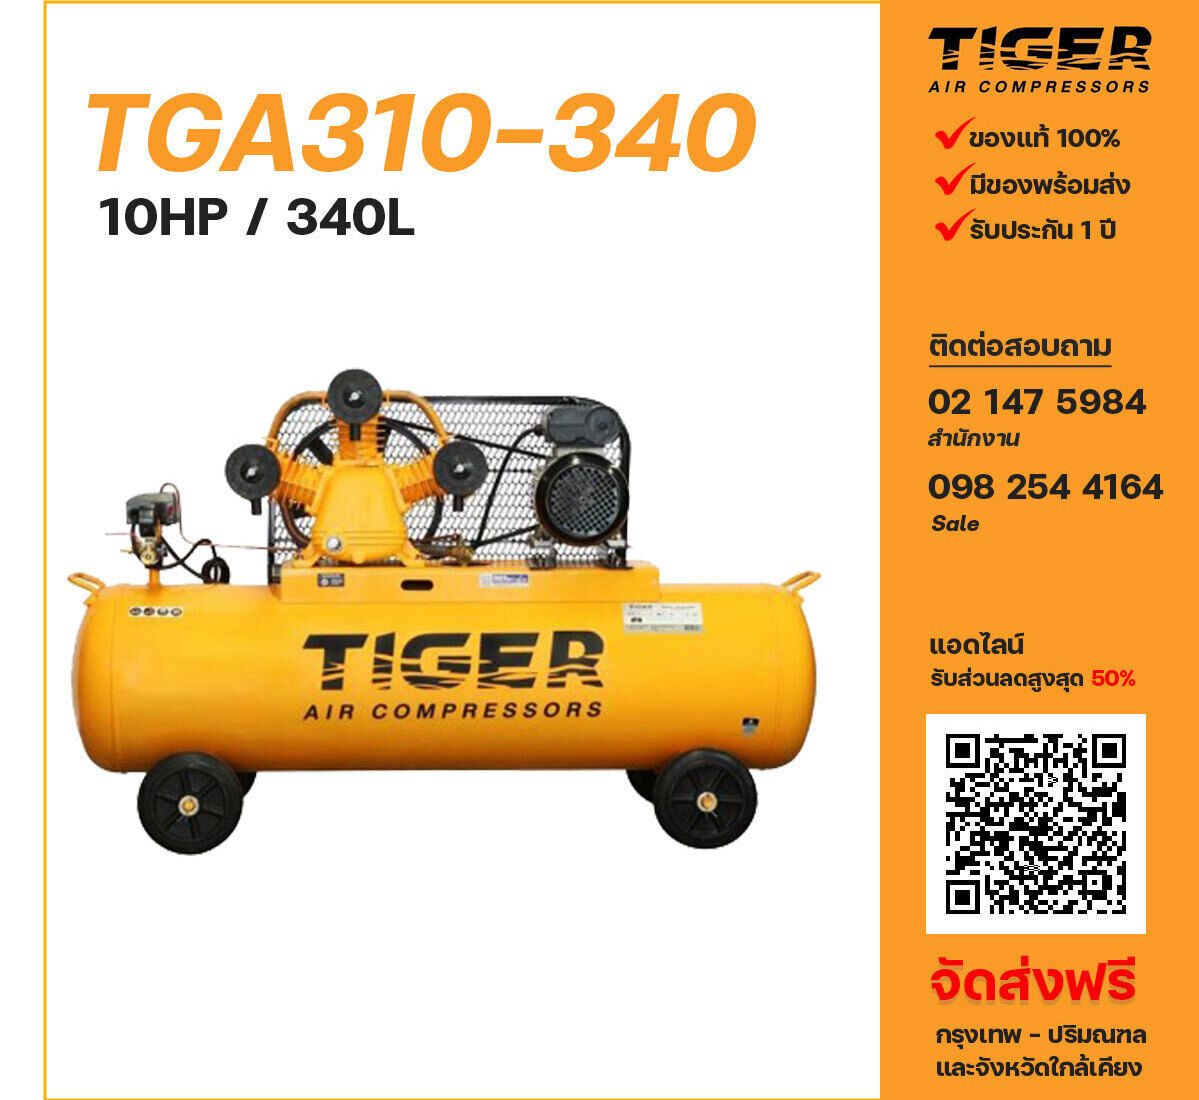 ปั๊มลมไทเกอร์ TIGER TGA310-340 380V ปั๊มลมลูกสูบ ขนาด 3 สูบ 10 แรงม้า 340 ลิตร TIGER พร้อมมอเตอร์ ไฟ 380V ส่งฟรี กรุงเทพฯ-ปริมณฑล รับประกัน 1 ปี